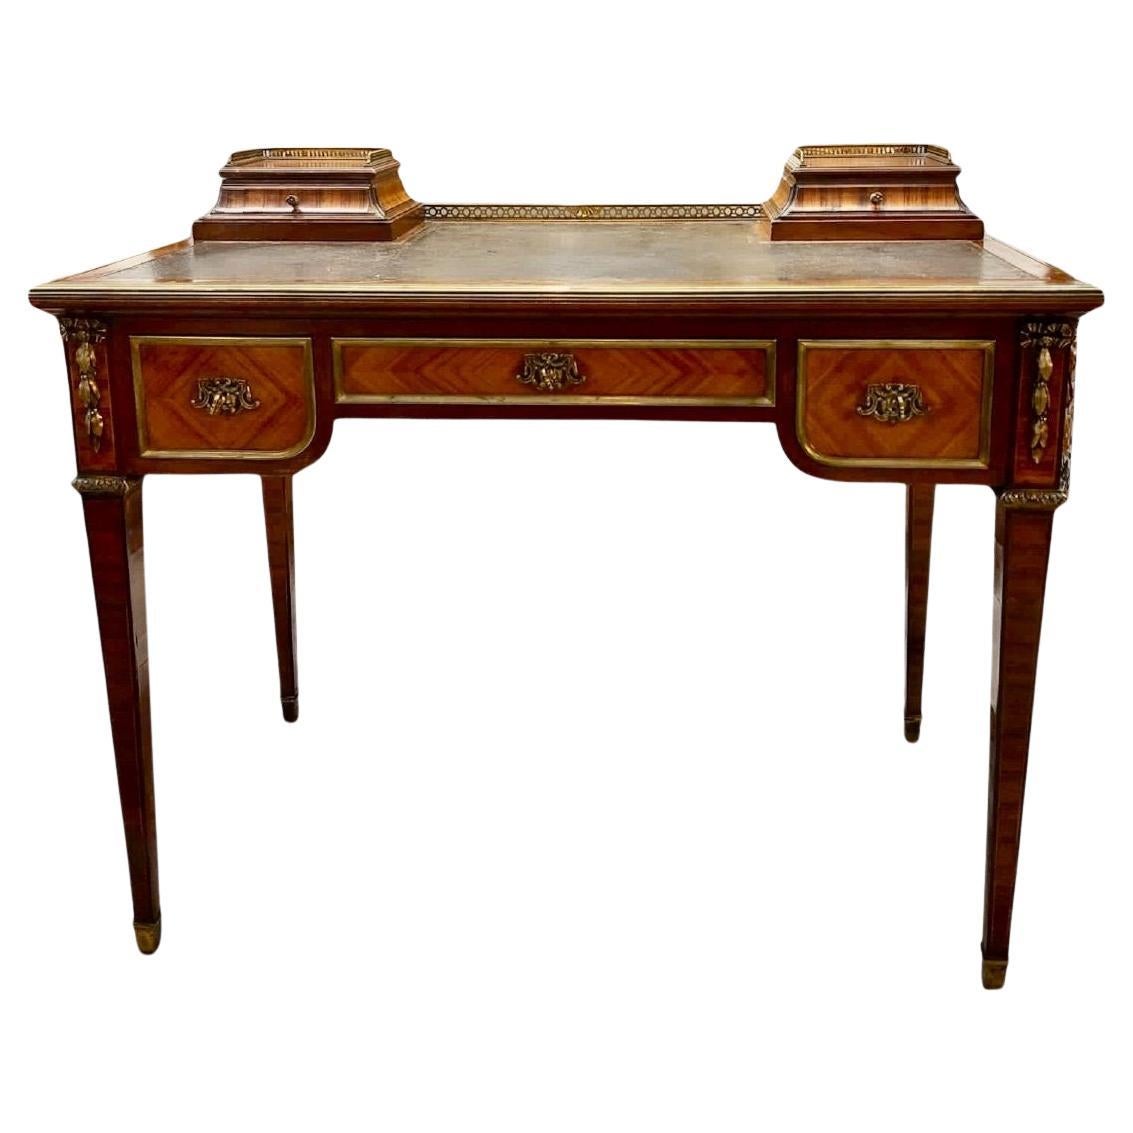 19th Century Bureau Leather Desk from Maison Mercier Frères